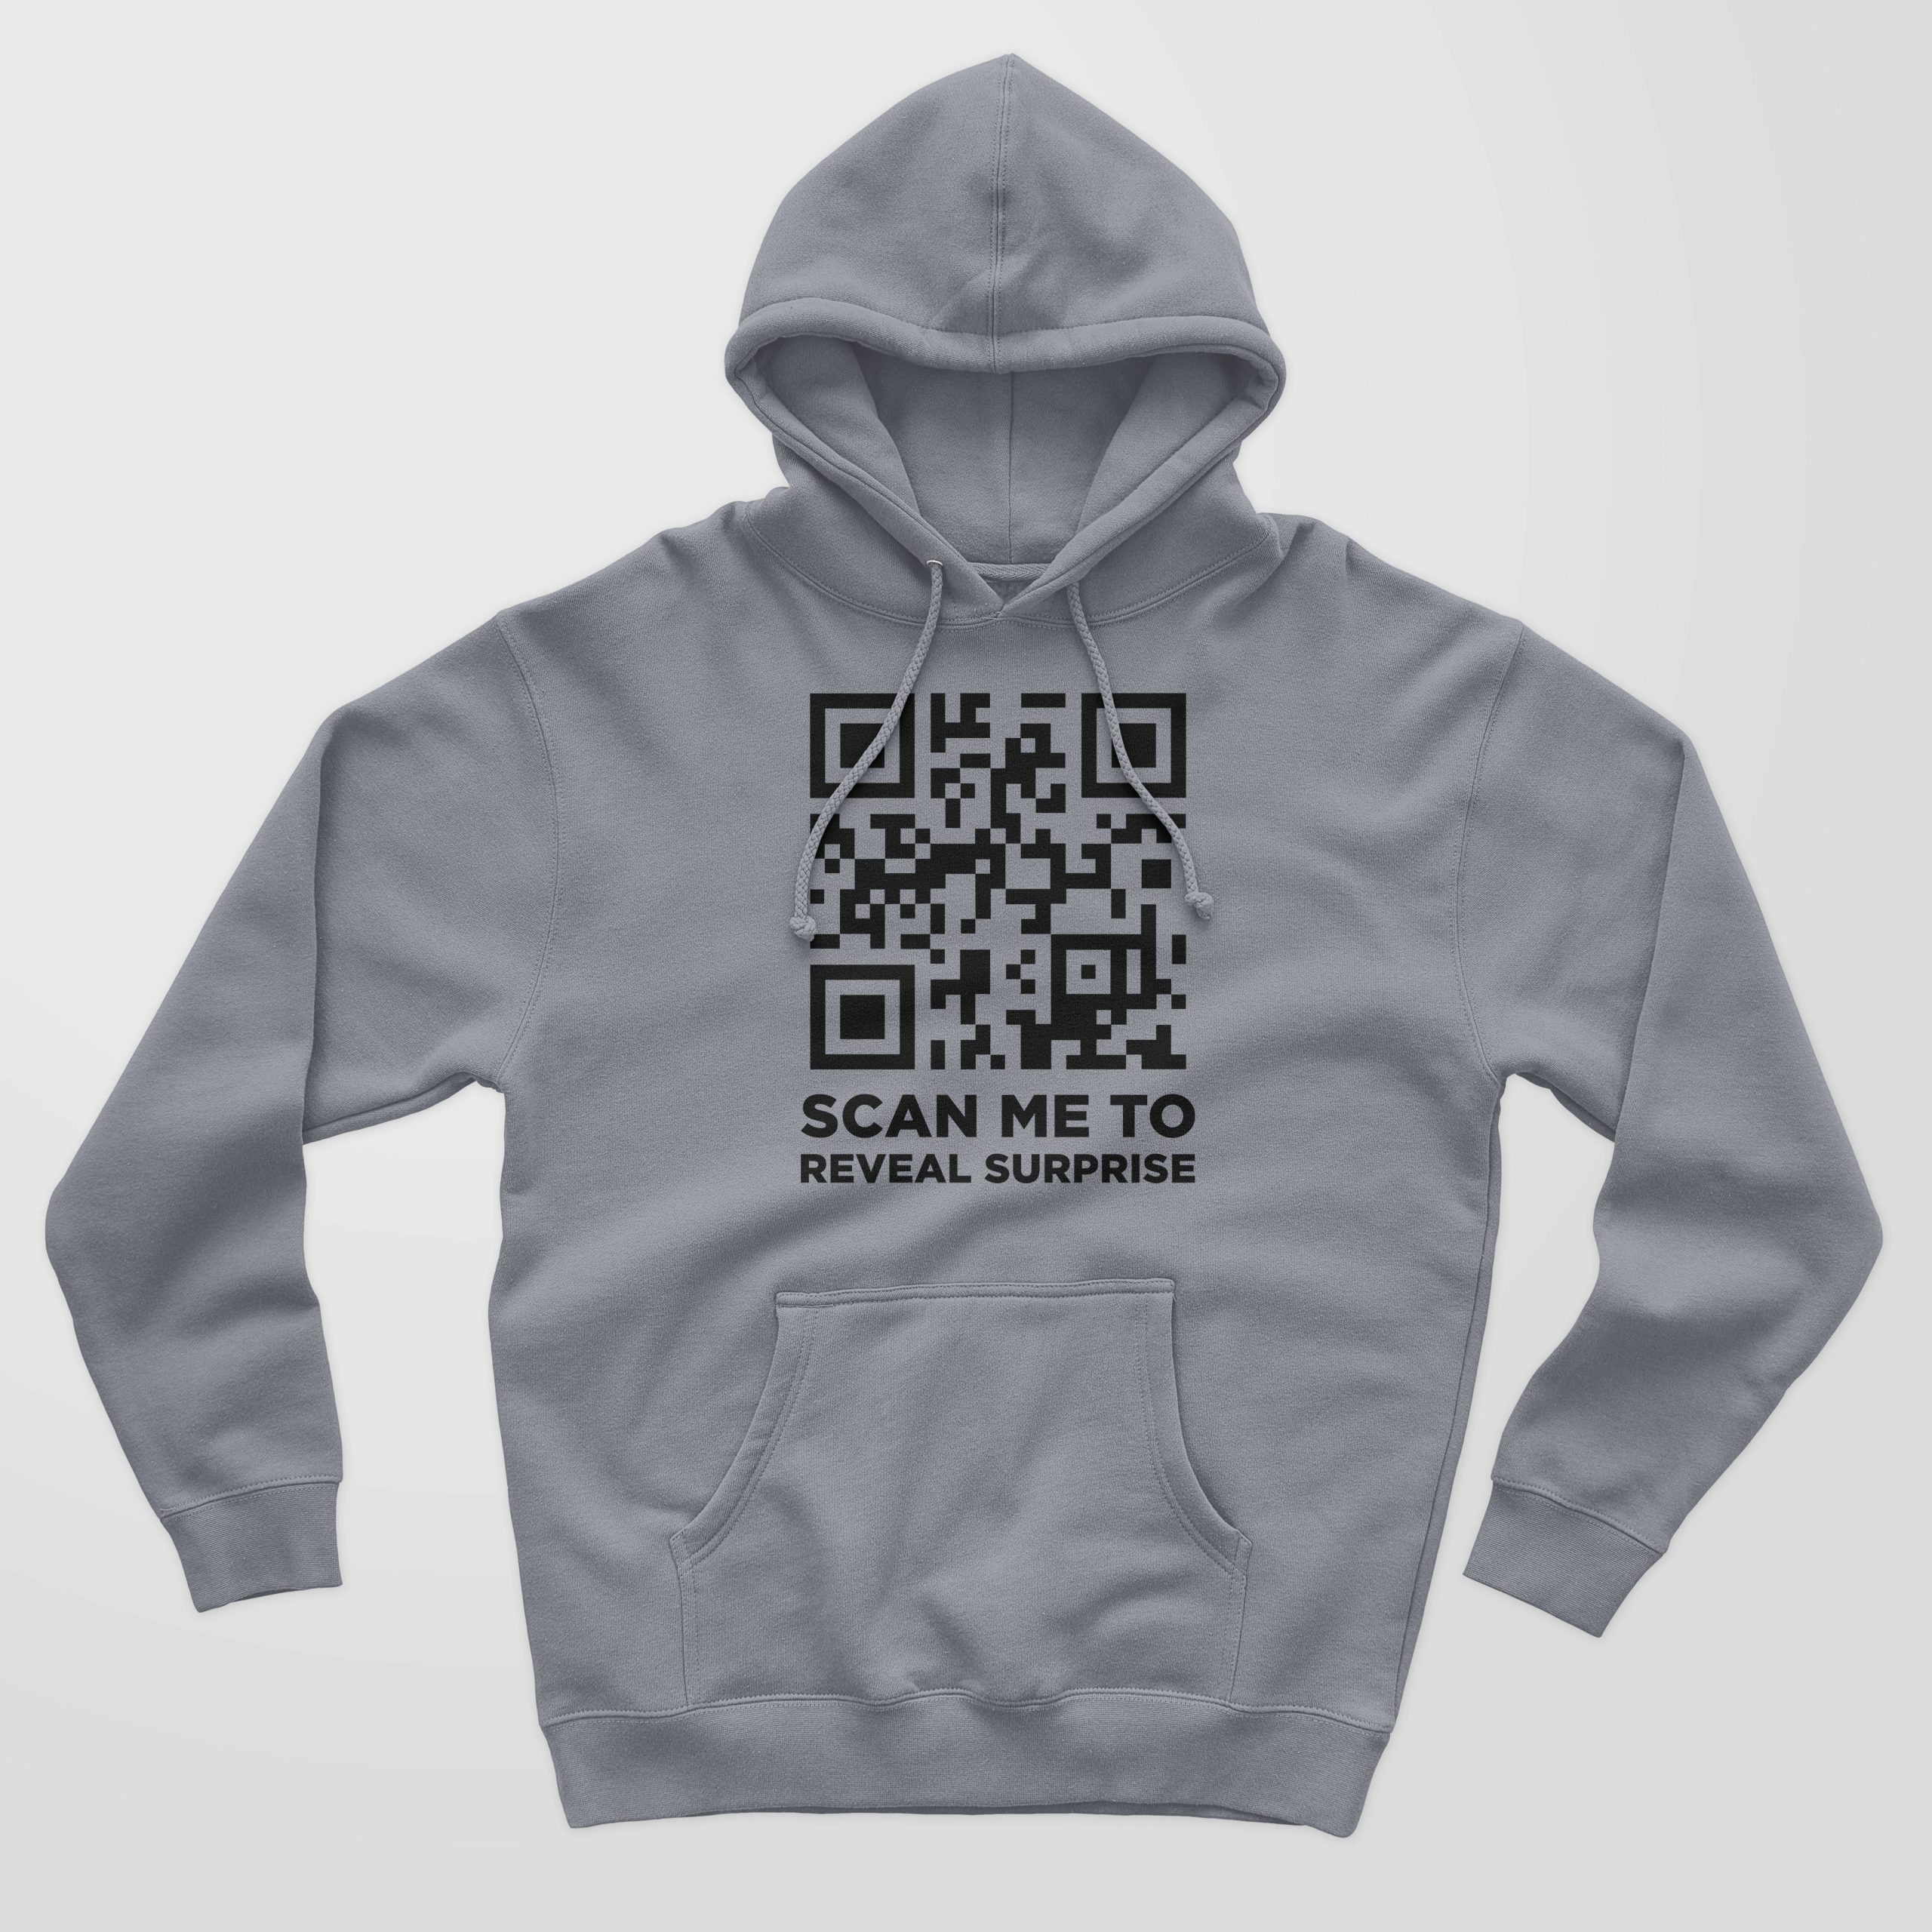 QR code hoodie